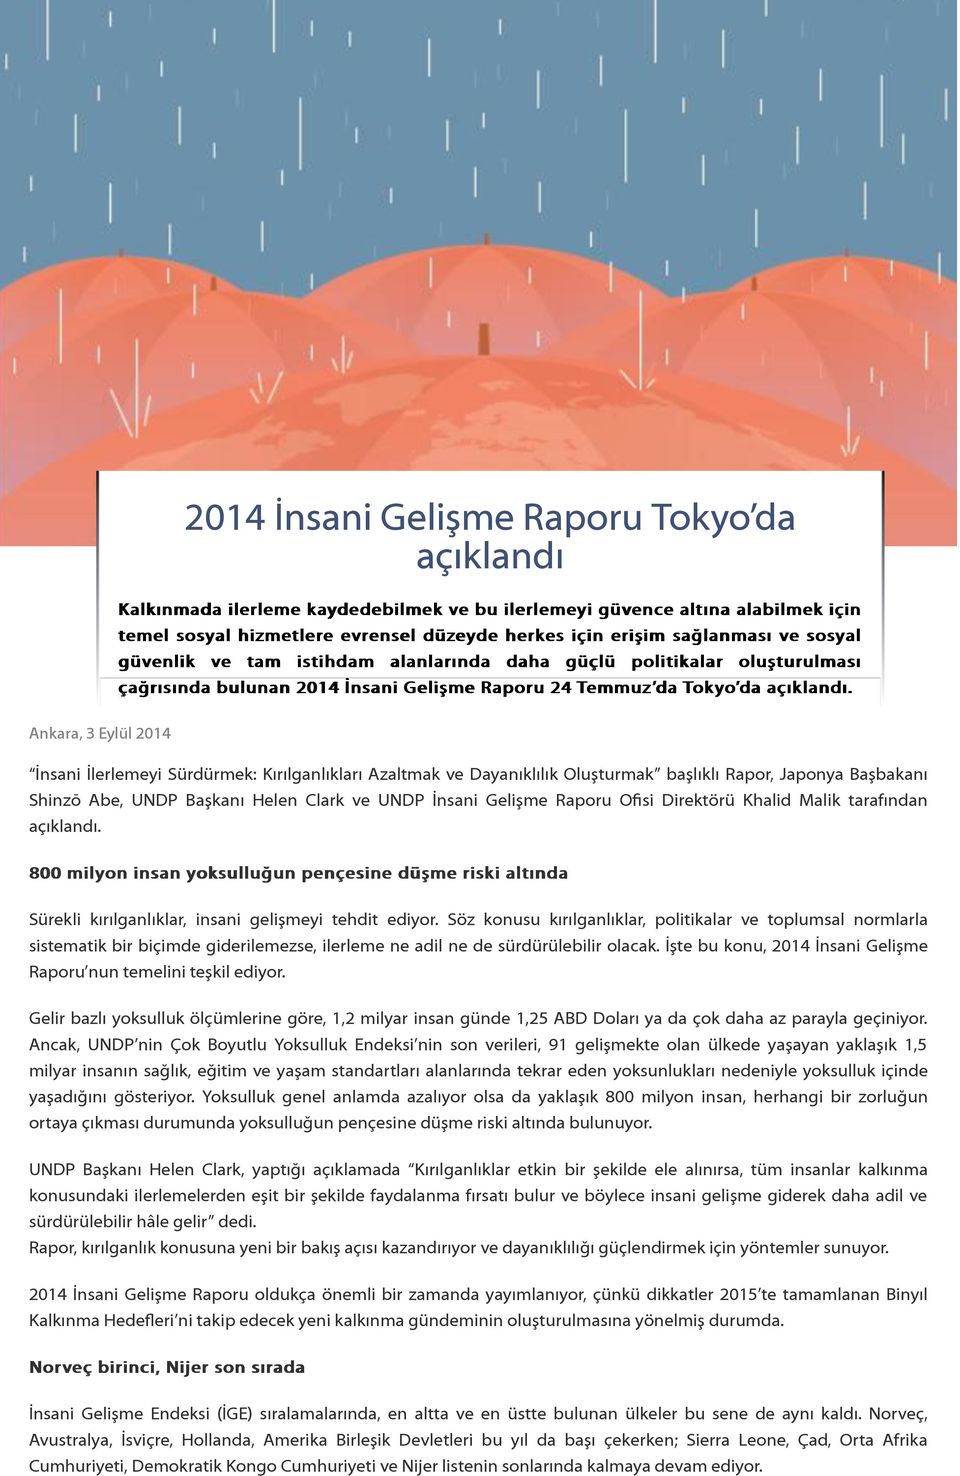 Ankara, 3 Eylül 2014 İnsani İlerlemeyi Sürdürmek: Kırılganlıkları Azaltmak ve Dayanıklılık Oluşturmak başlıklı Rapor, Japonya Başbakanı Shinzō Abe, UNDP Başkanı Helen Clark ve UNDP İnsani Gelişme